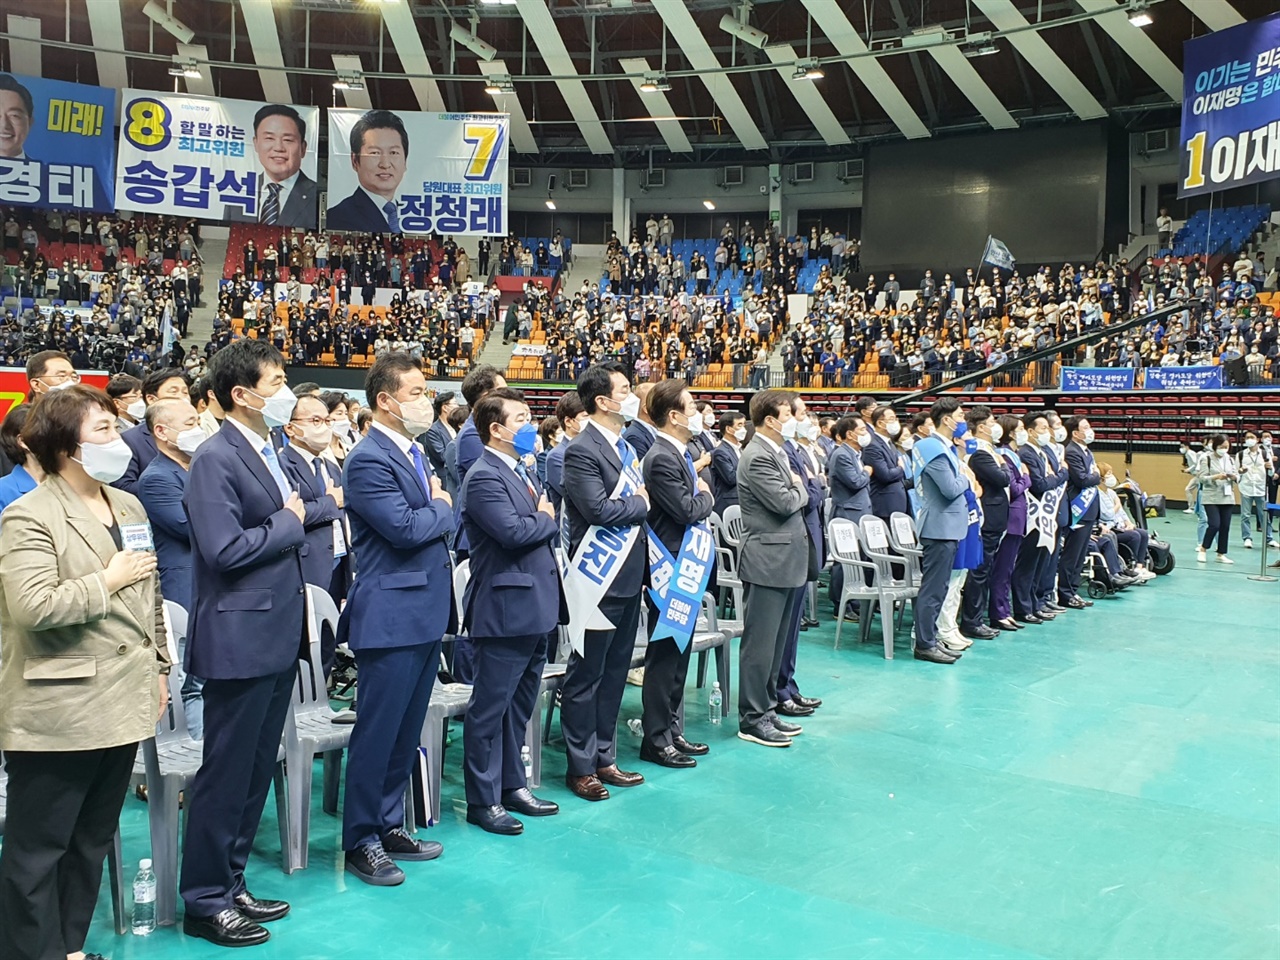 경기도 고양시 킨텍스에서 열린 민주당 서울지역 경선 합동연설회에서 참가자들이 연설에 앞서 국민의례를 하고 있다.